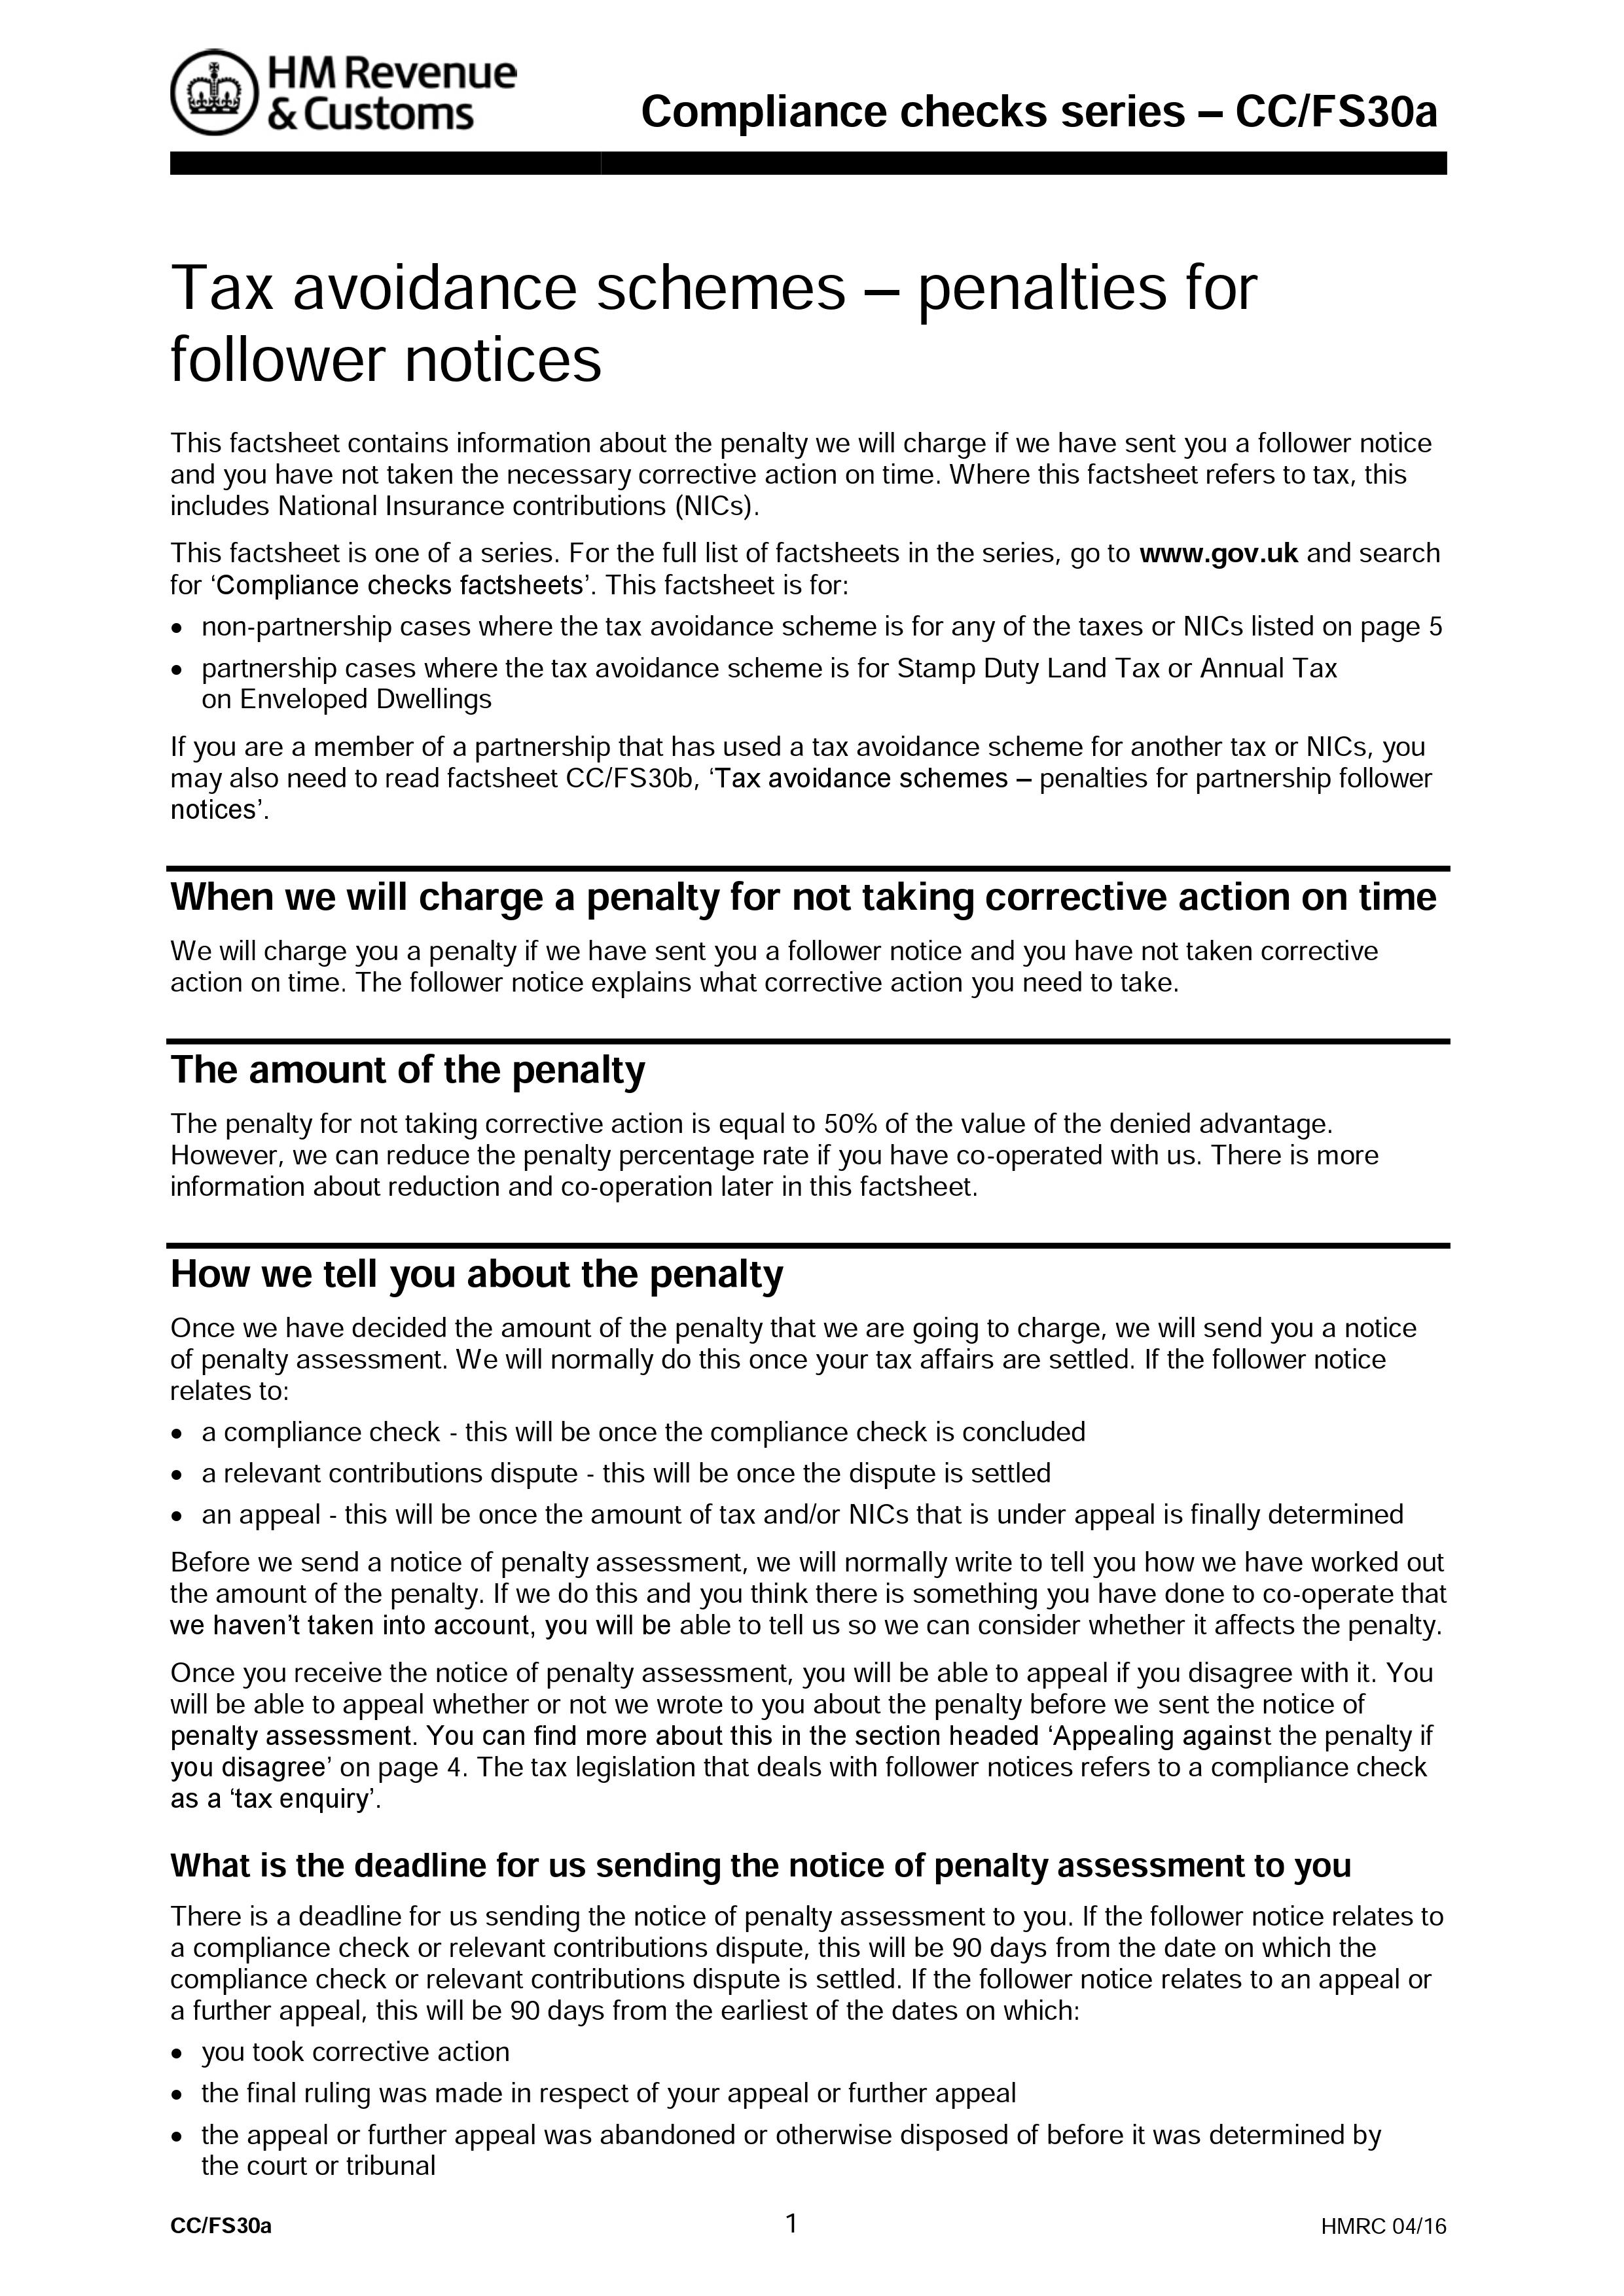 follower notice penalty